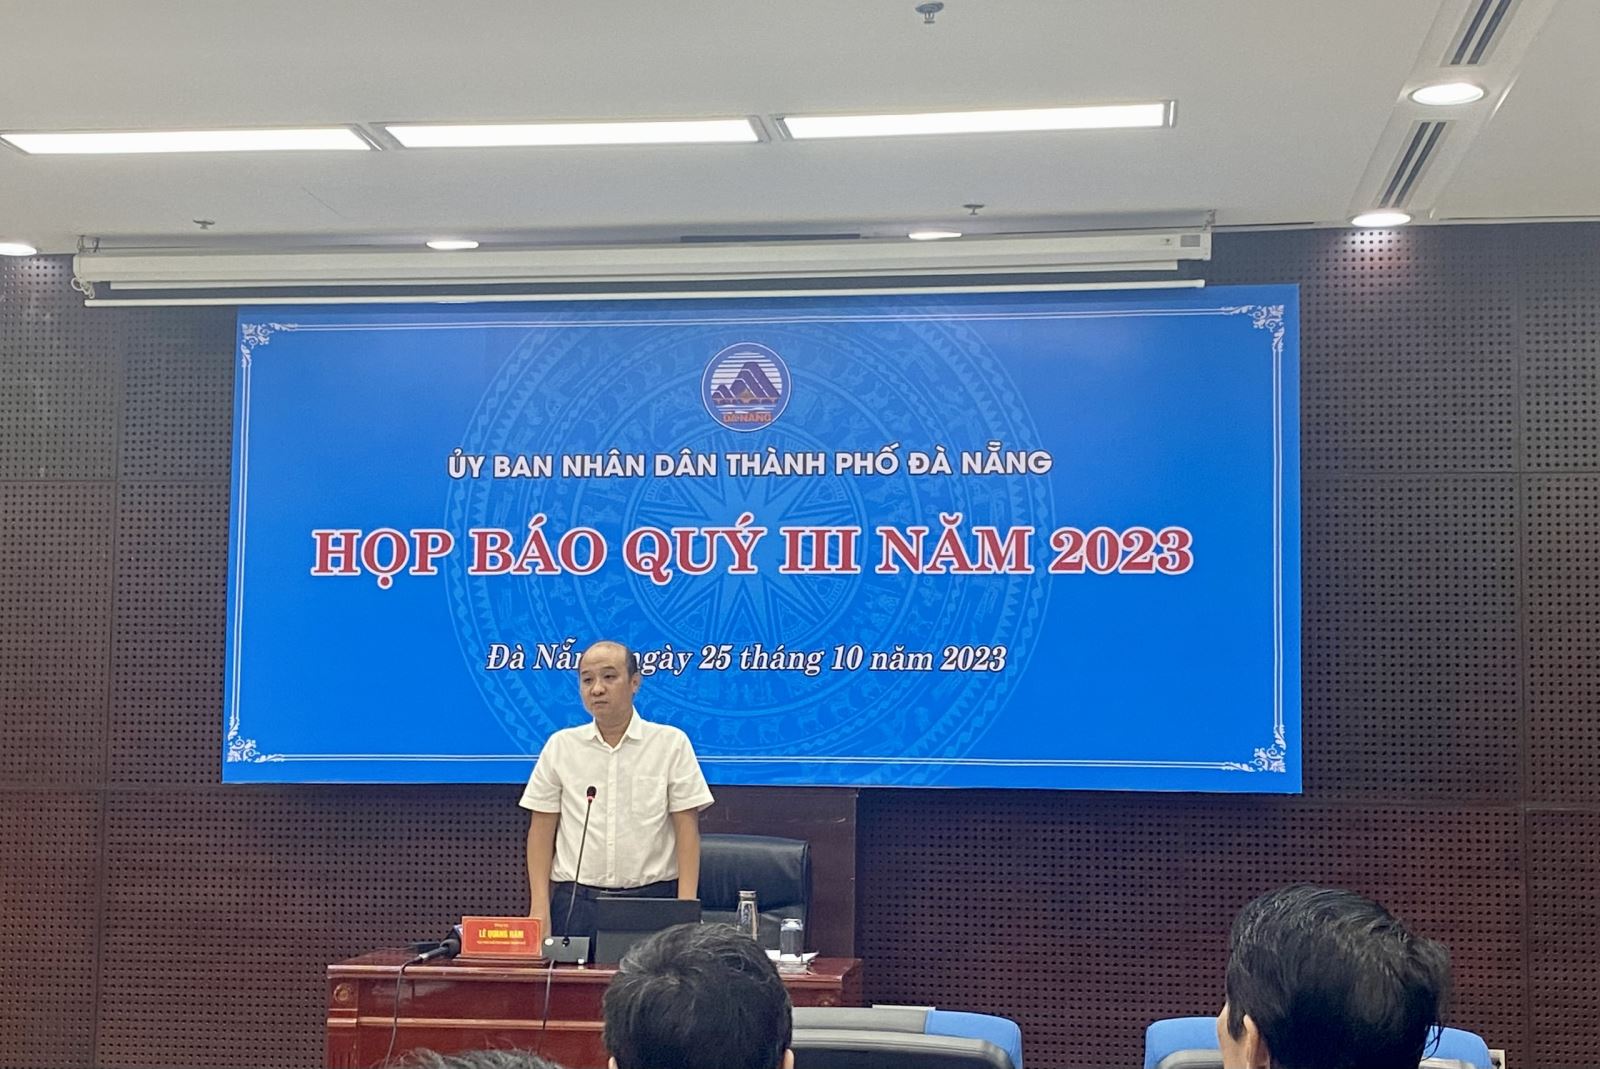 Ông Lê Quang Nam – Phó Chủ tịch UBND thành phố Đà Nẵng phát biểu chỉ đạo buổi họp báo.